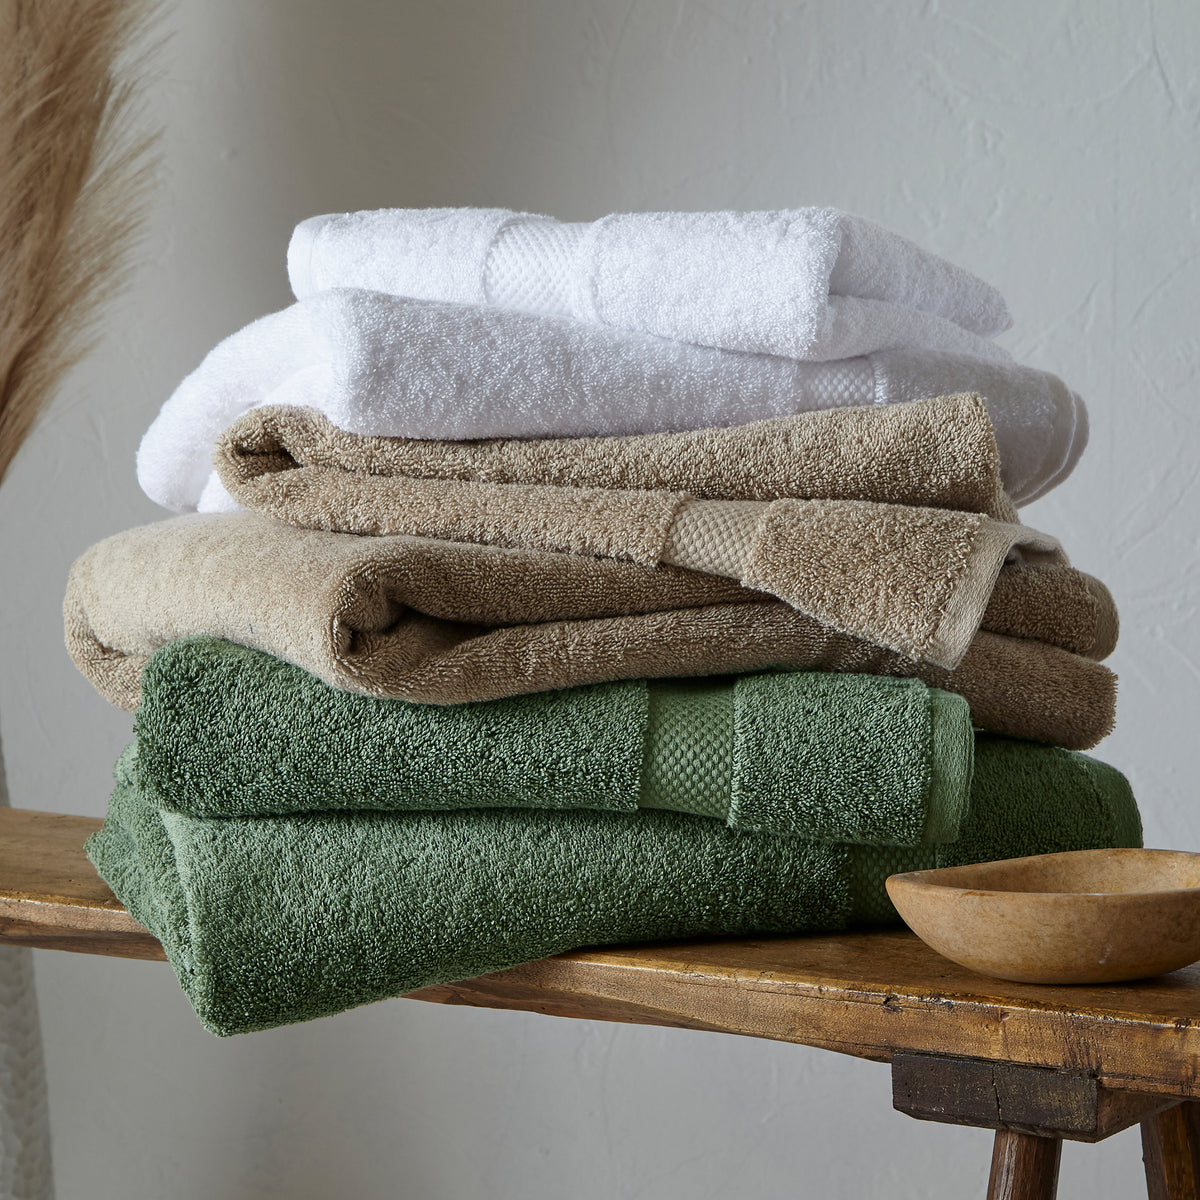 Loft 7pc Cotton Face / Hand / Bath / Sheet Towel Set